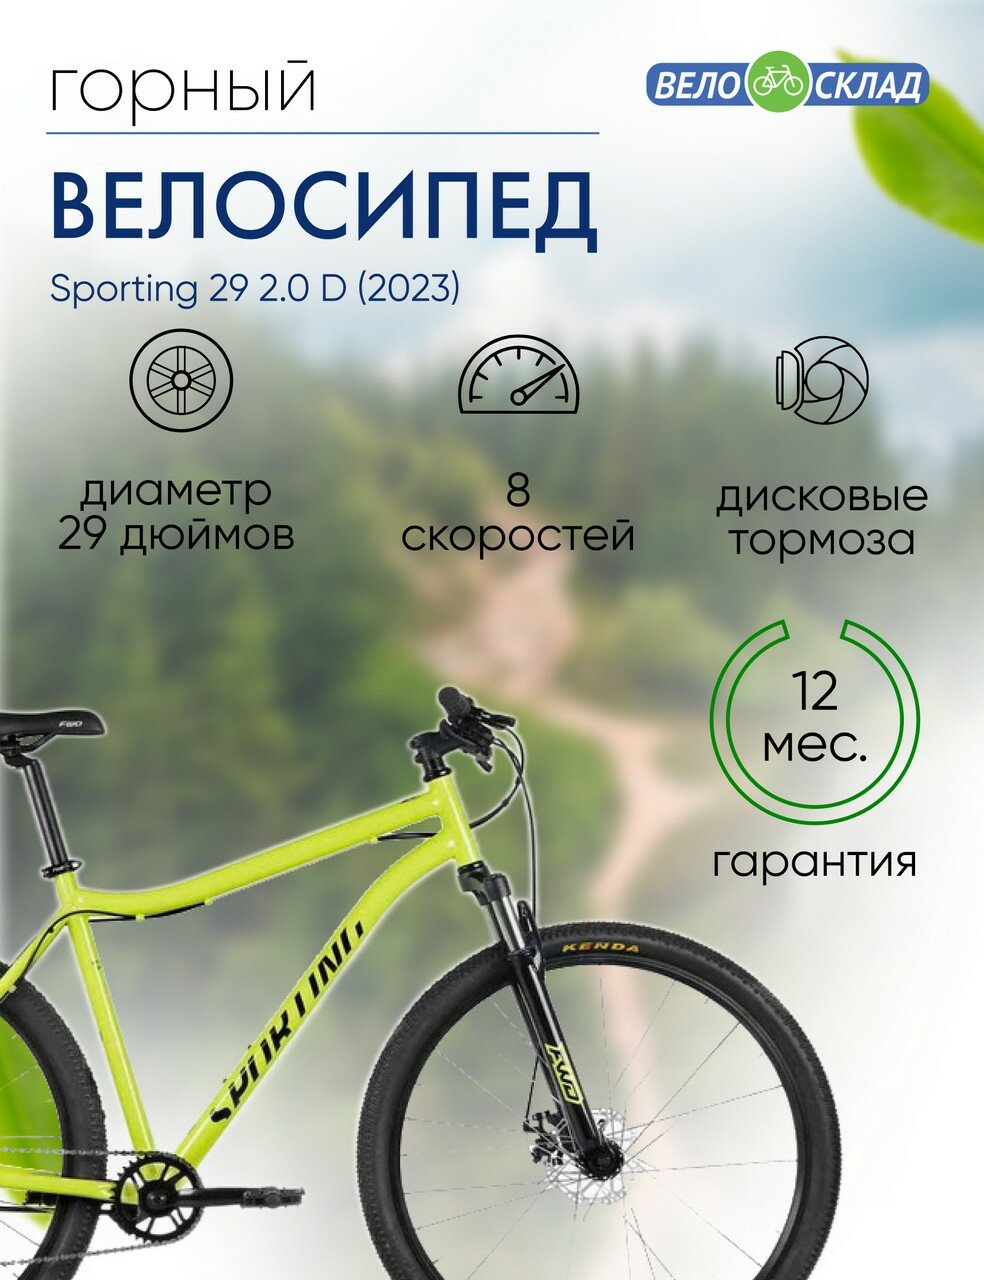 Горный велосипед Forward Sporting 29 2.0 D, год 2023, цвет Зеленый-Черный, ростовка 17